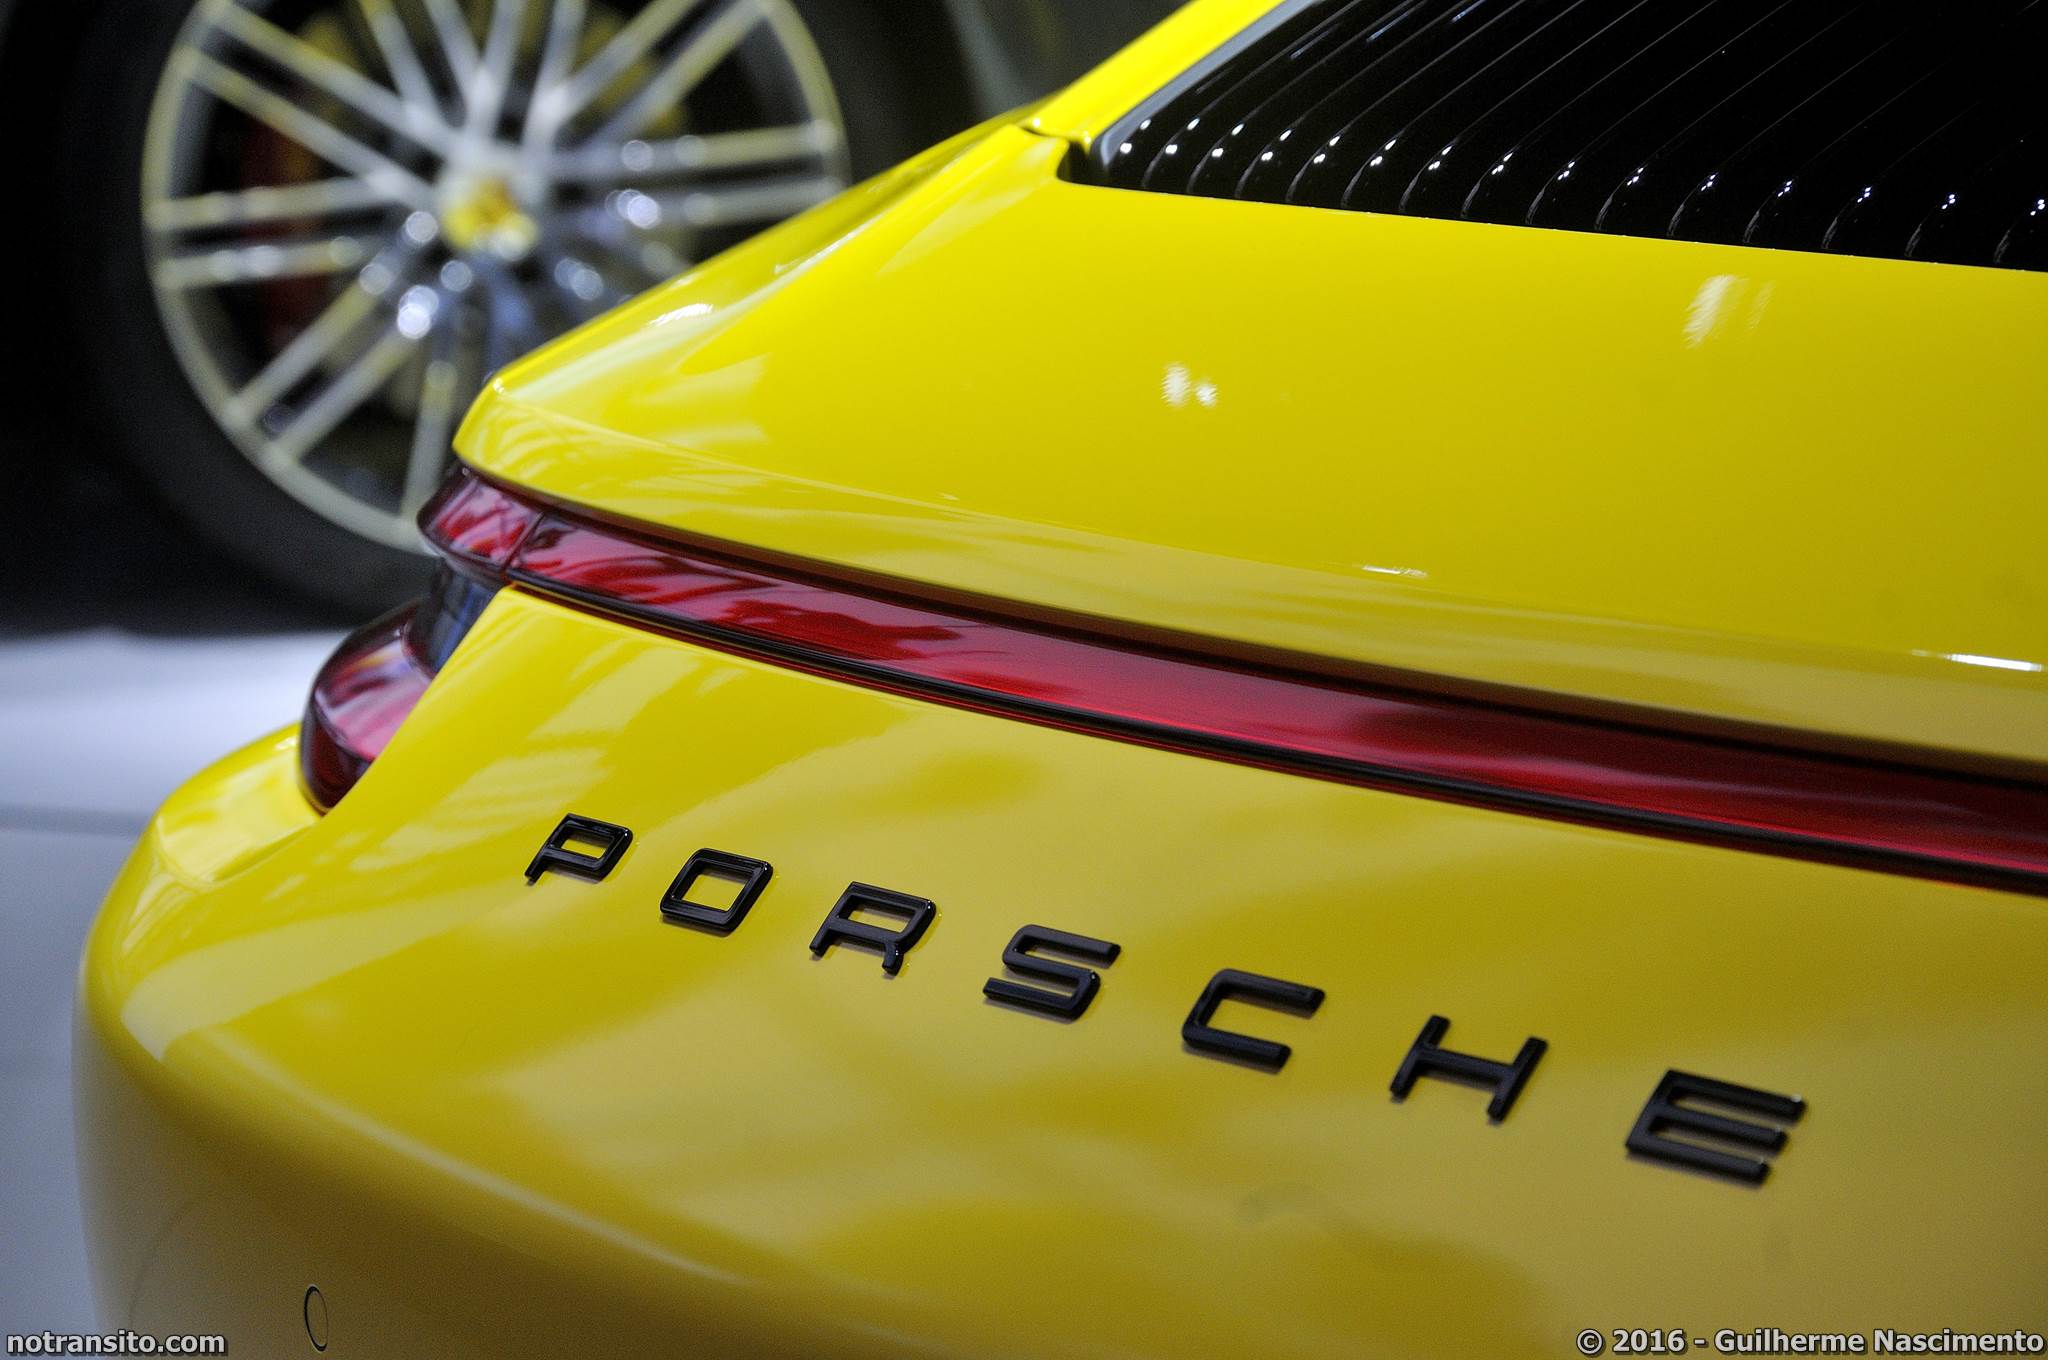 Porsche 911 Targa 4S Salão do Automóvel 2016